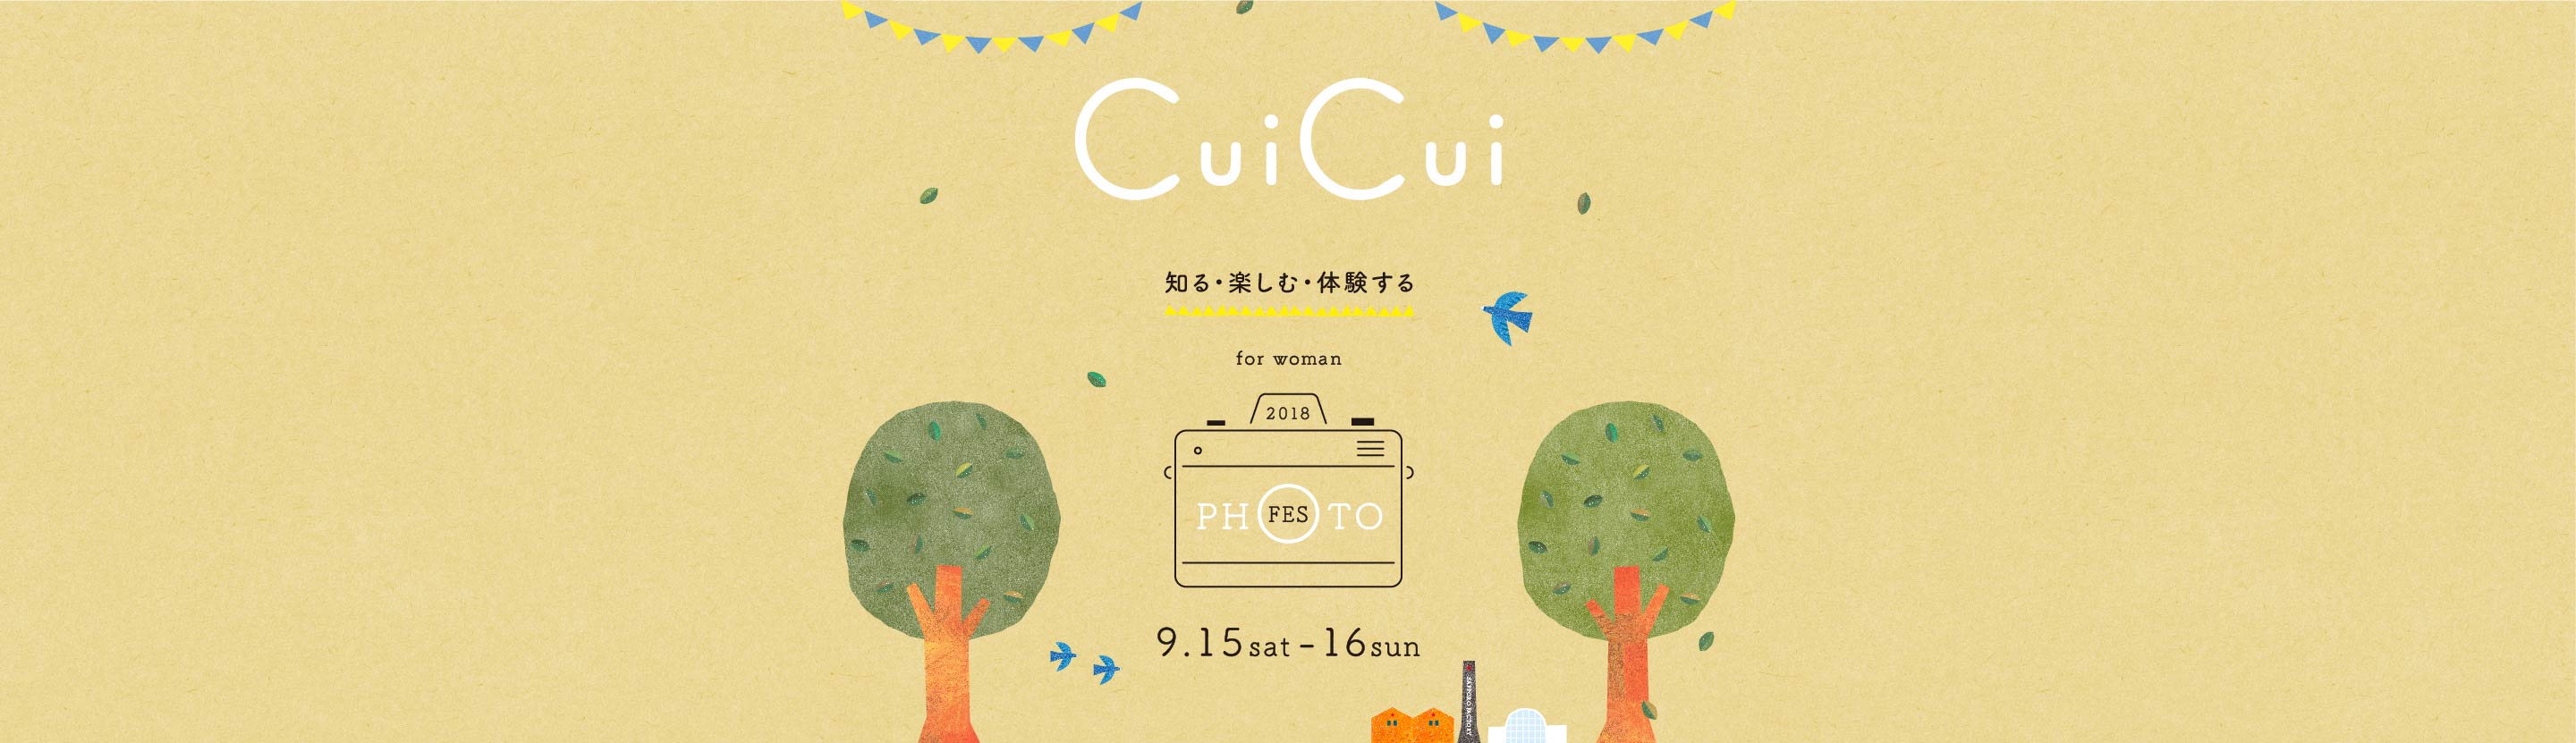 CuiCui2018